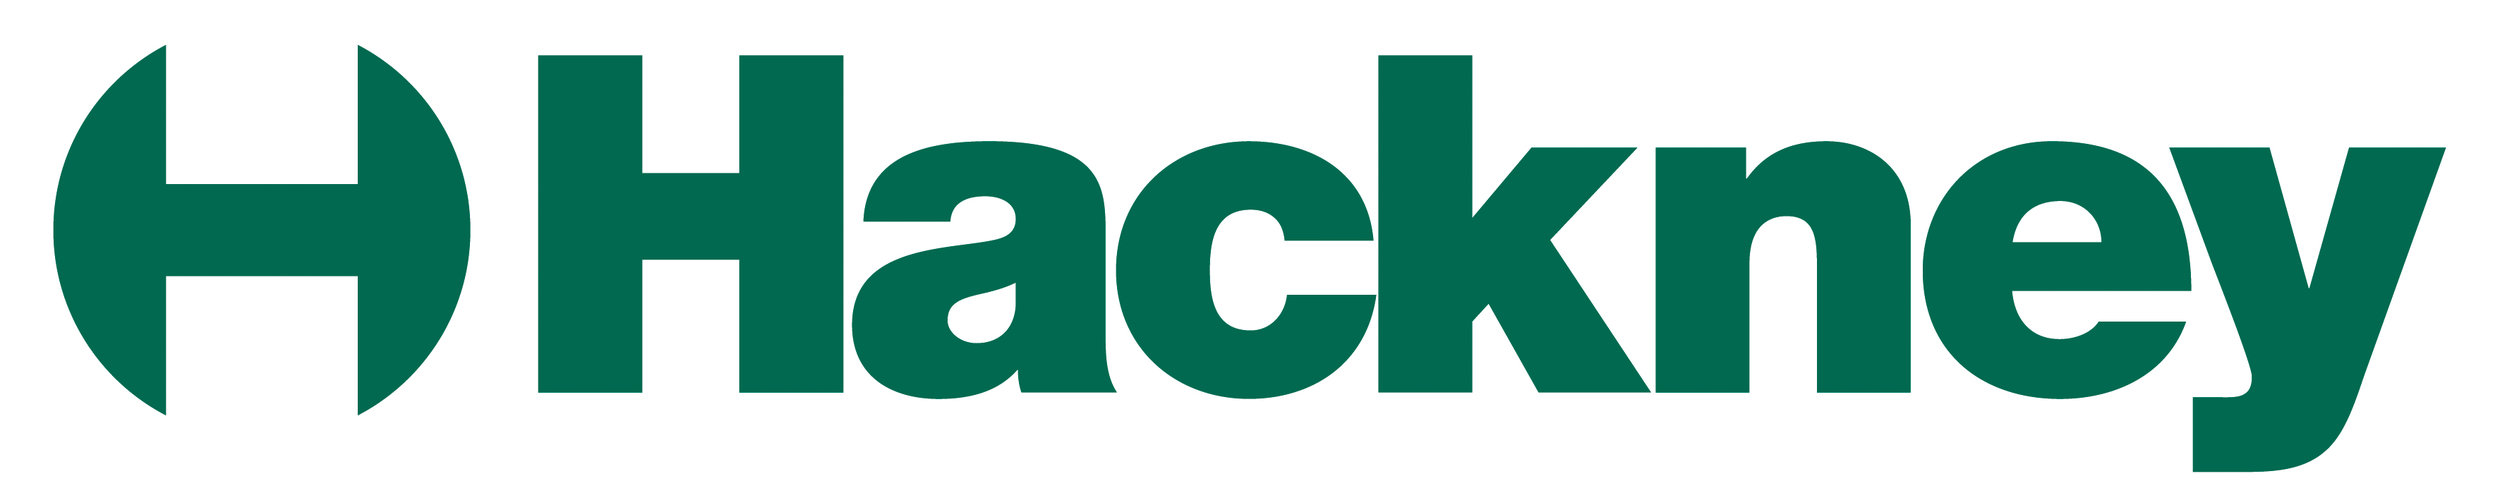 hackney-logo.jpg